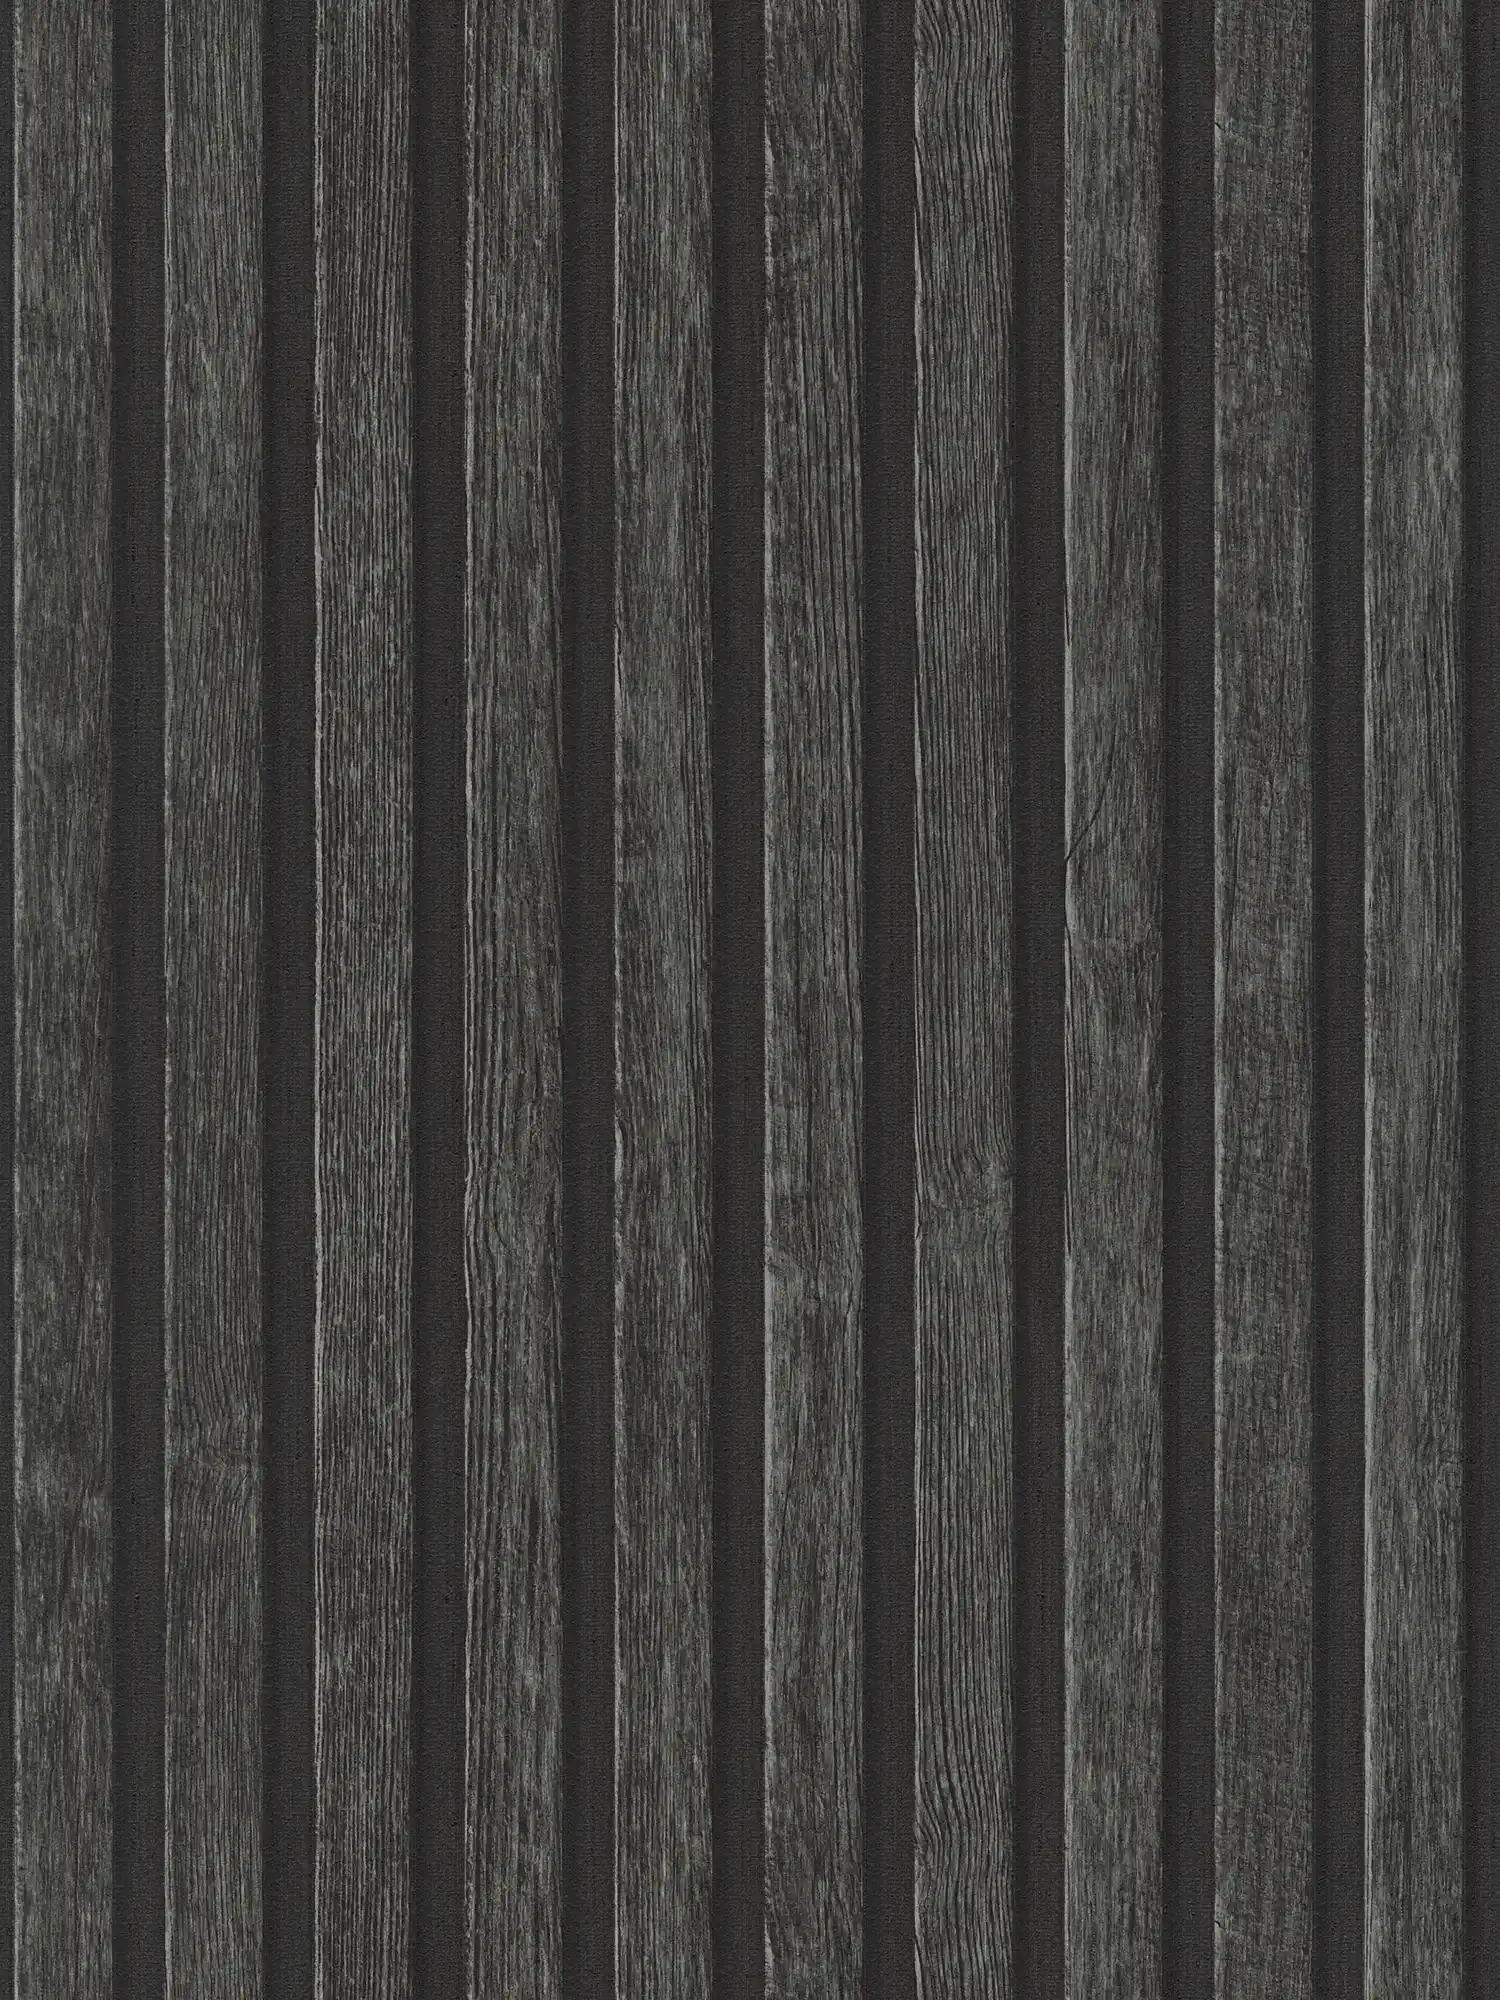         Papel pintado de efecto madera con patrón de paneles - negro, marrón
    